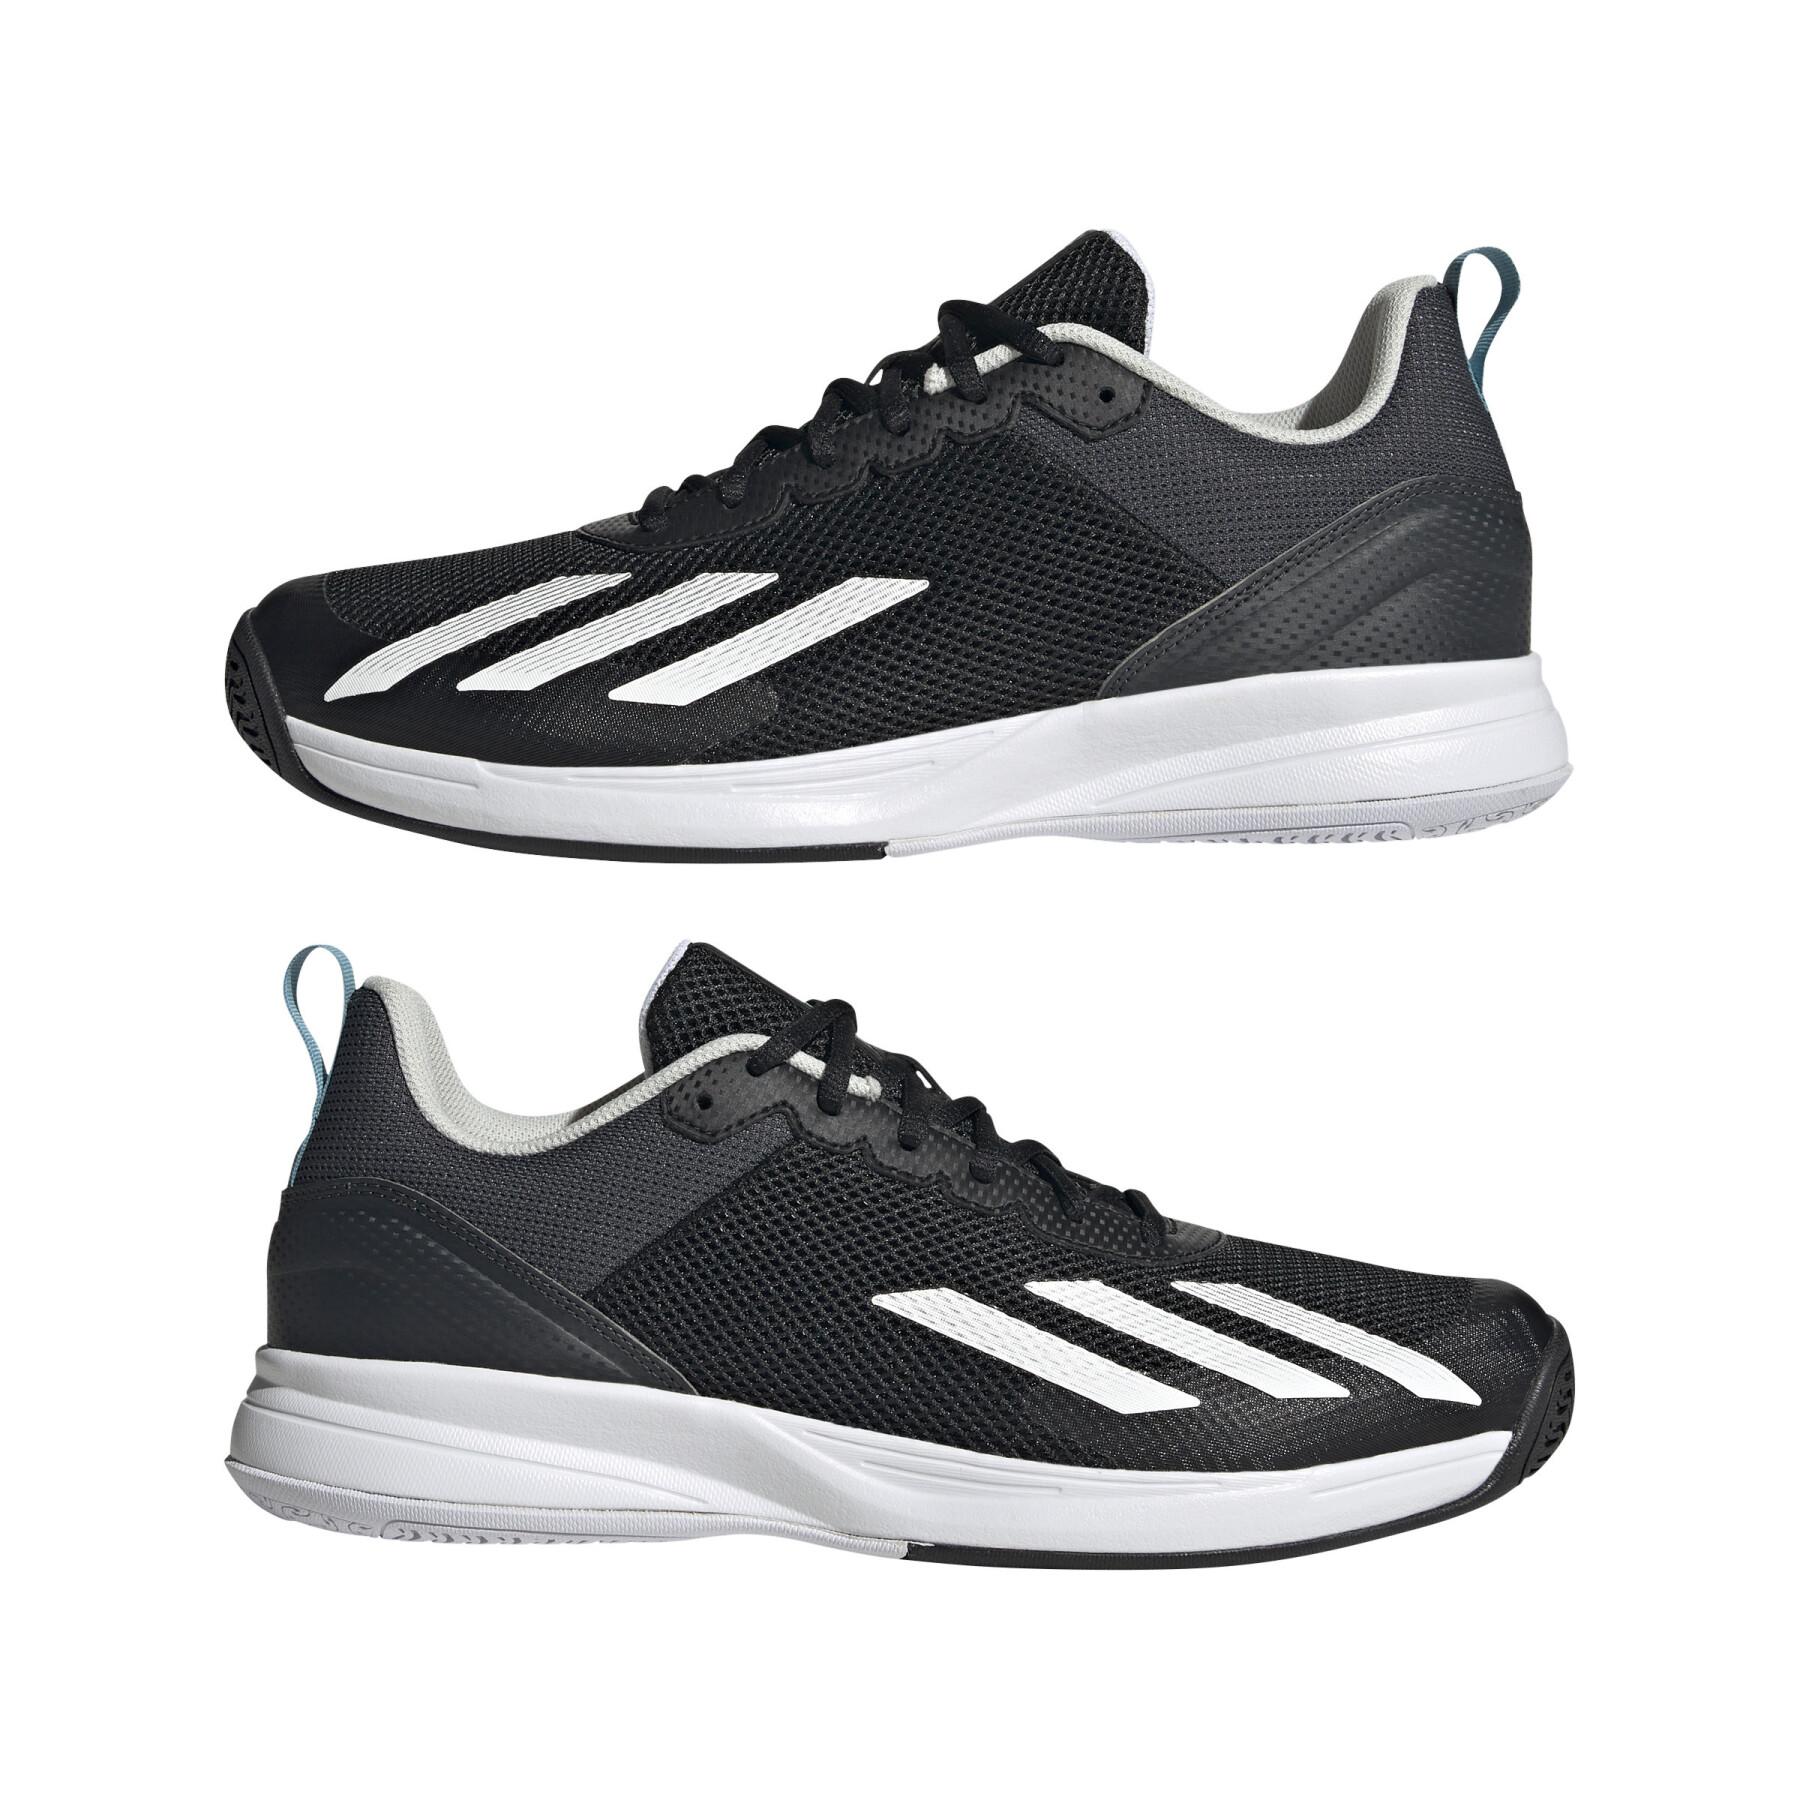 Chaussures de tennis adidas Courtflash Speed